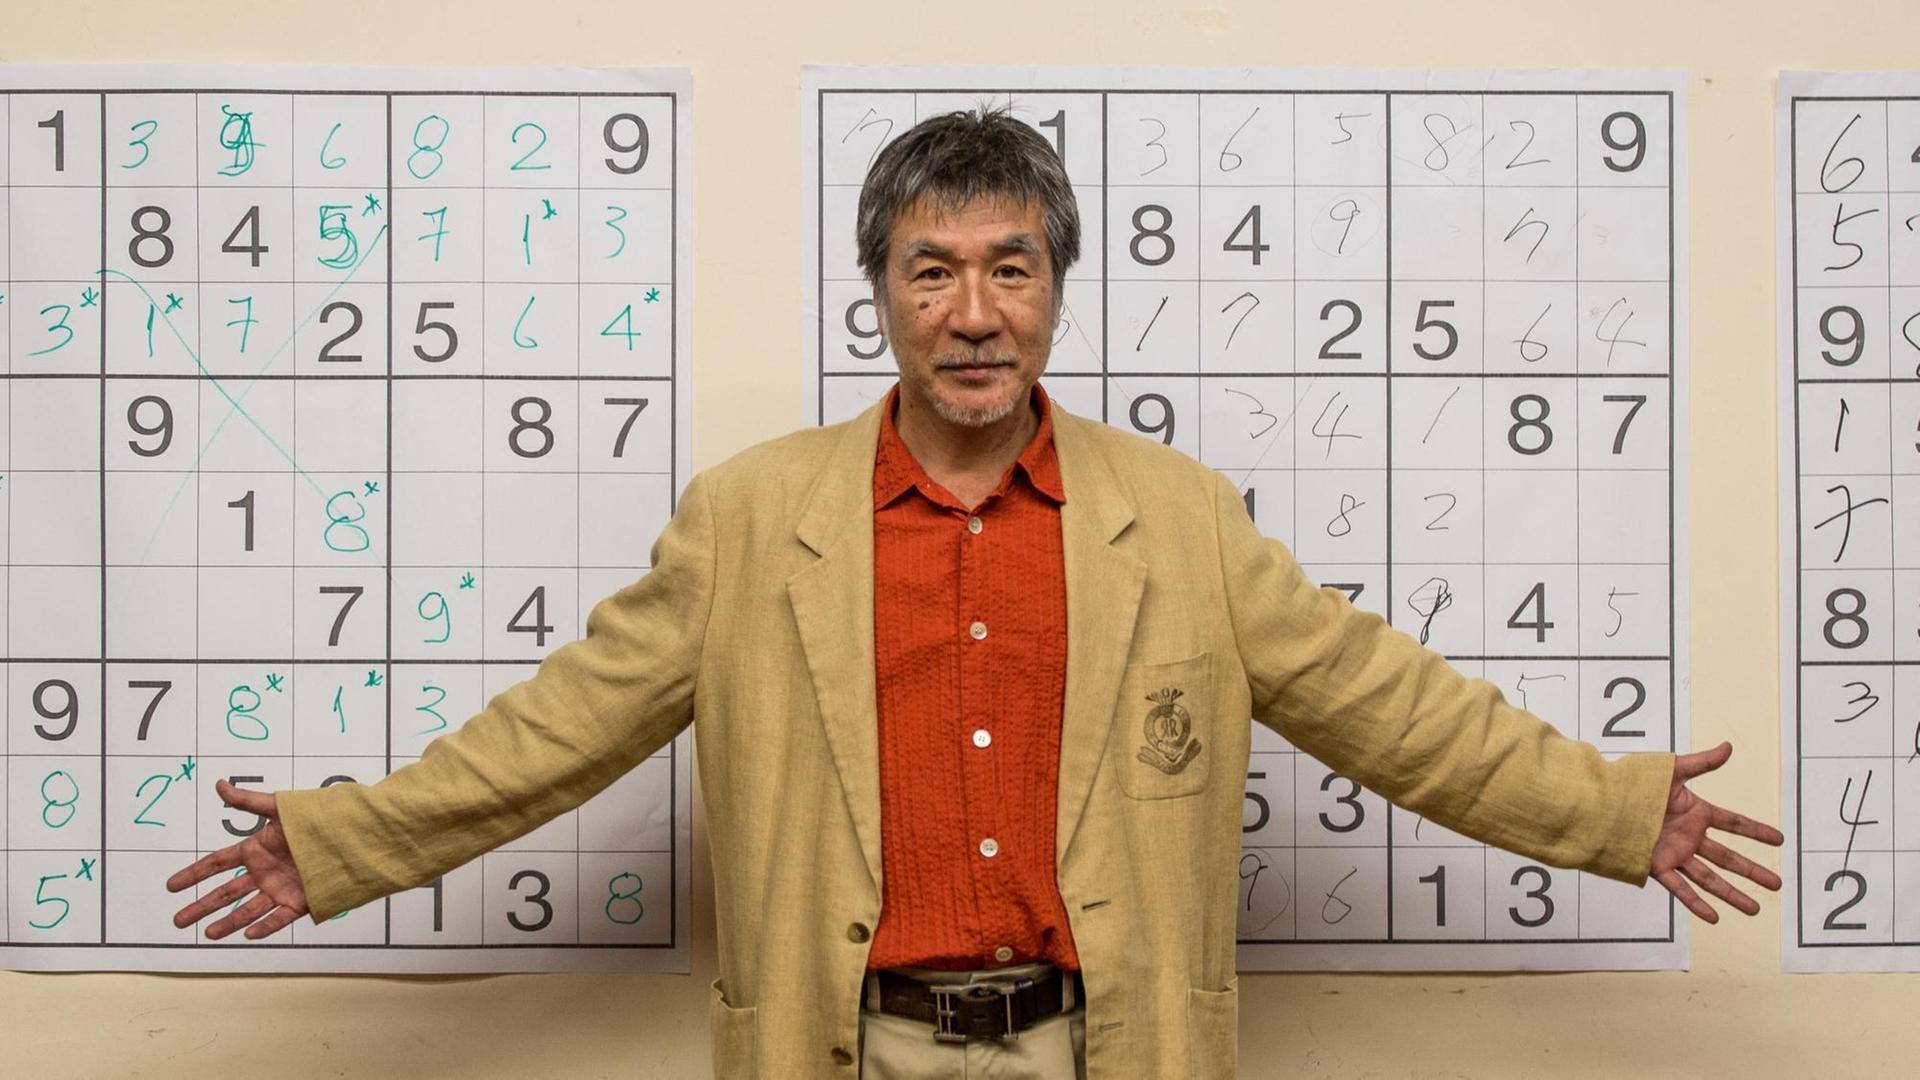 Maki Kaji steht vor einer Wand mit vergrößerten Sudoku-Rätseln.